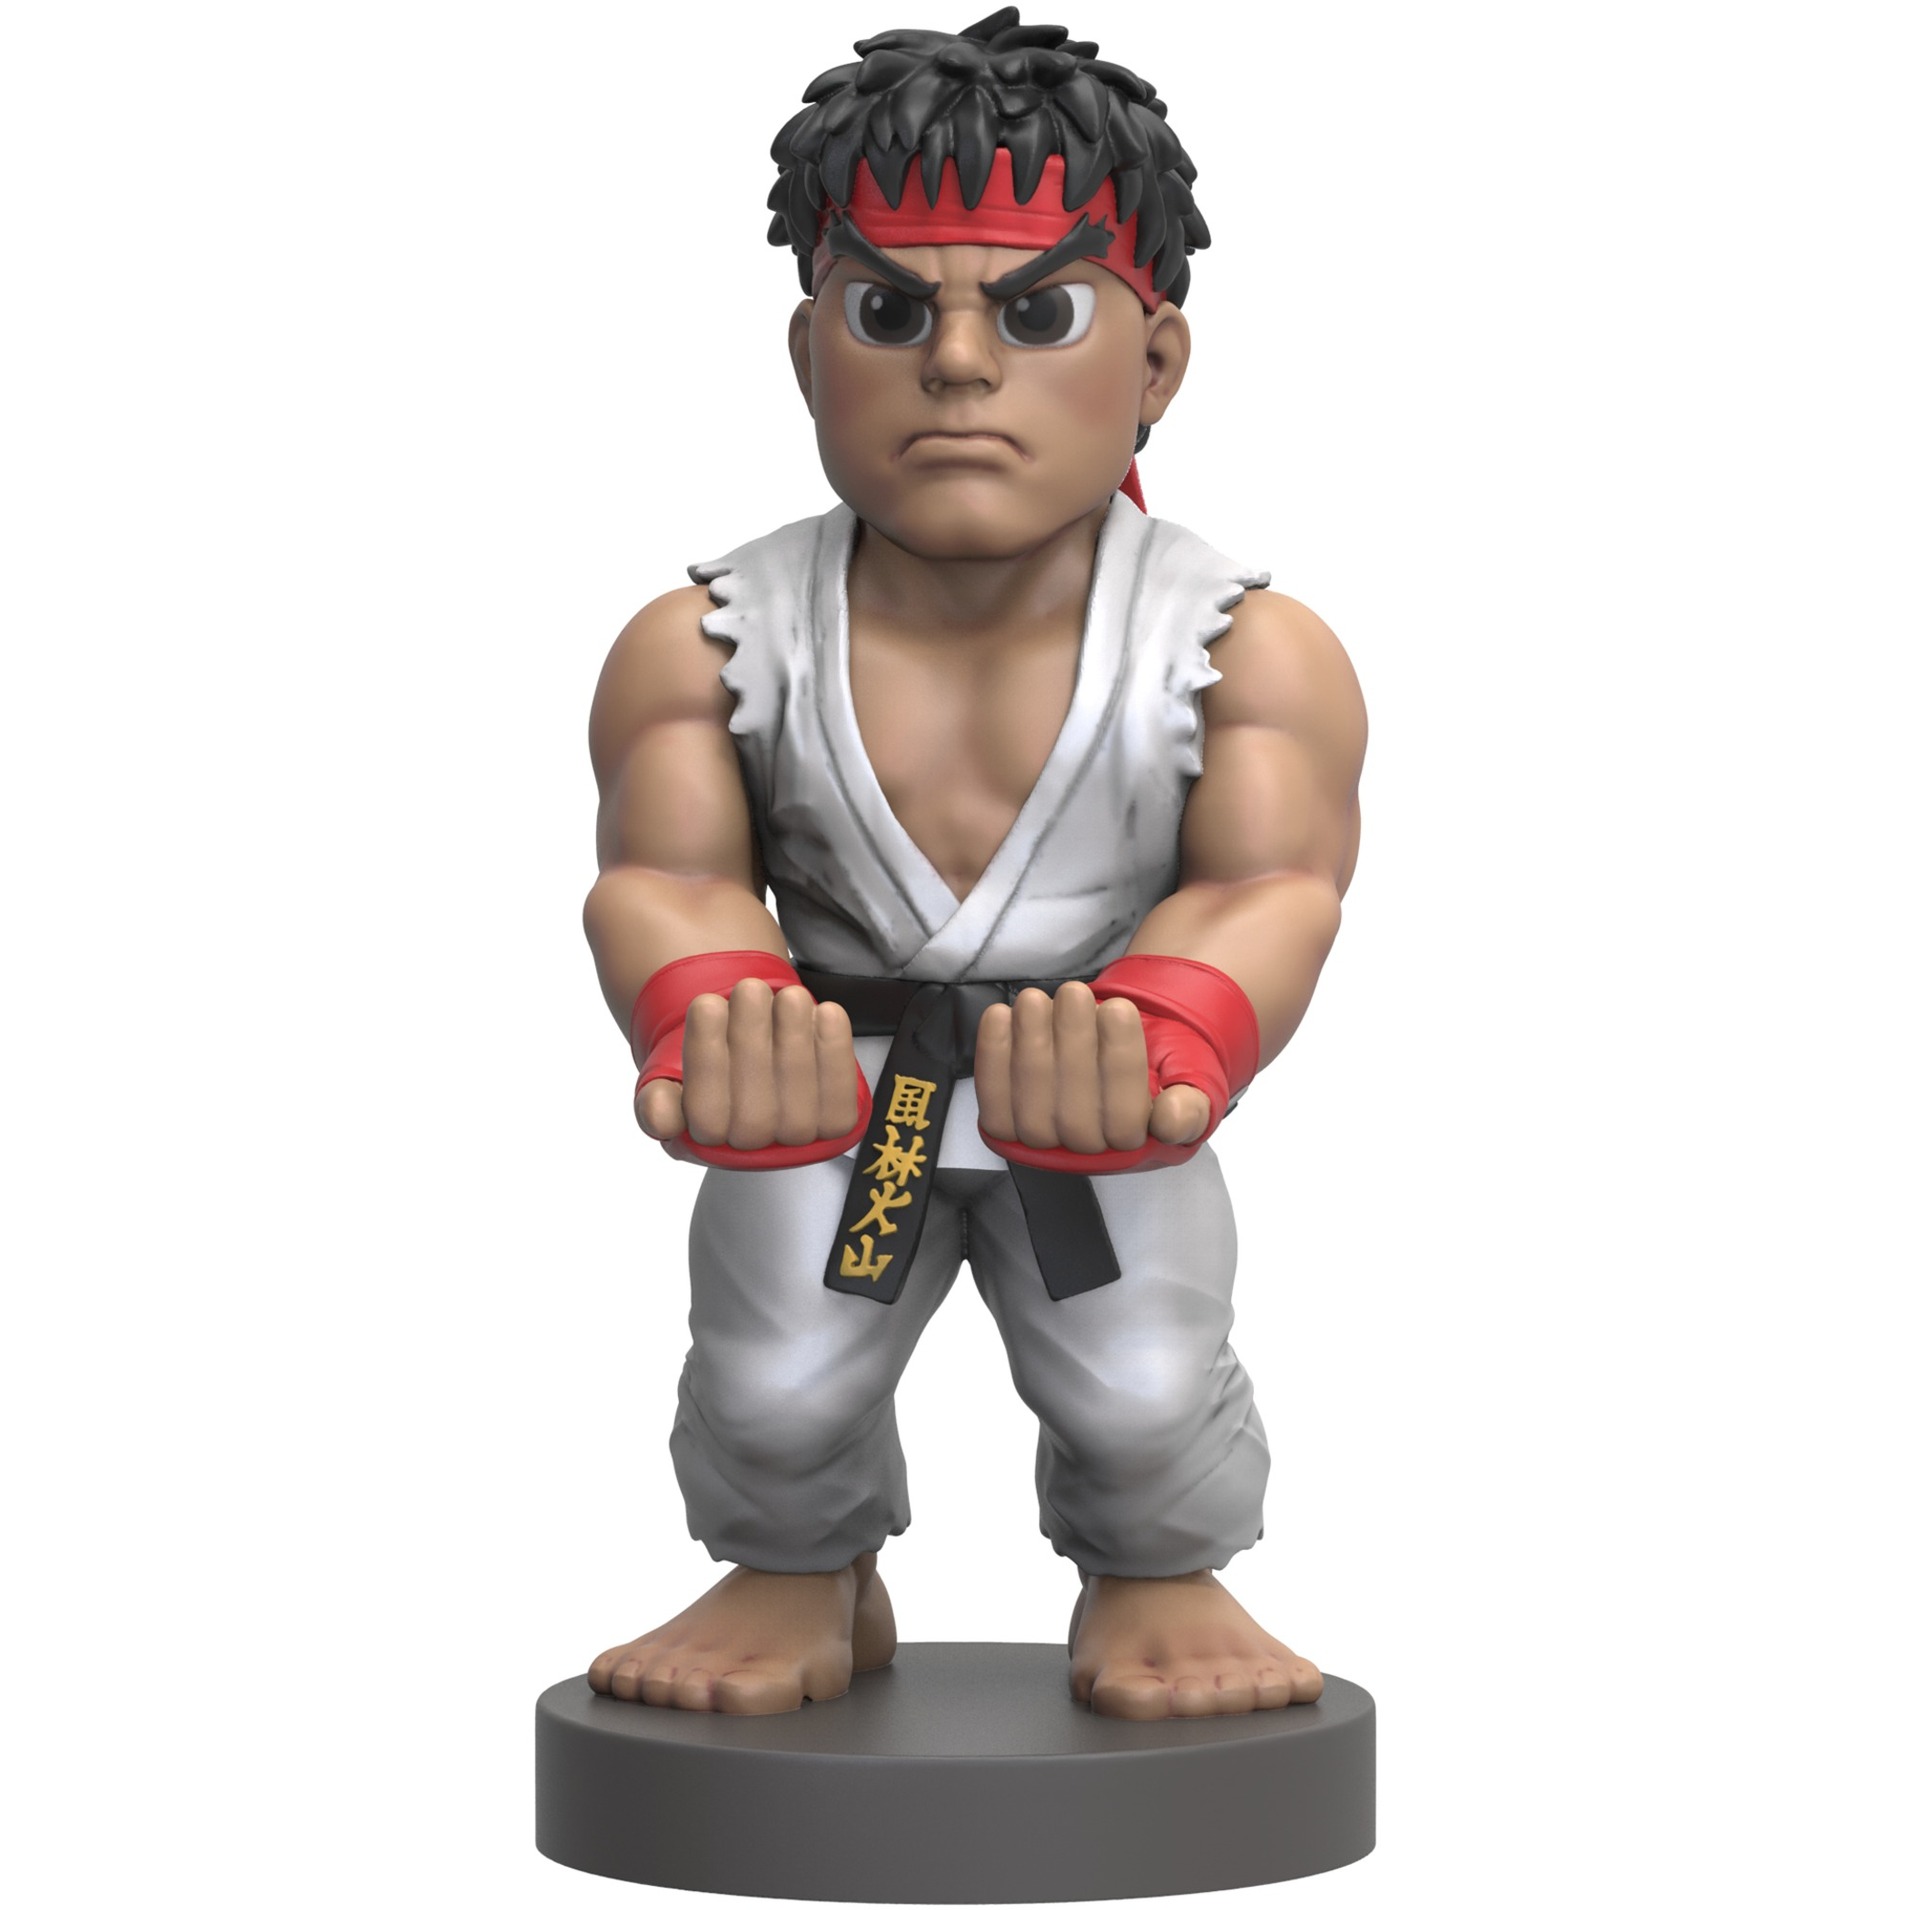 Image of Alternate - Ryu, Halterung online einkaufen bei Alternate